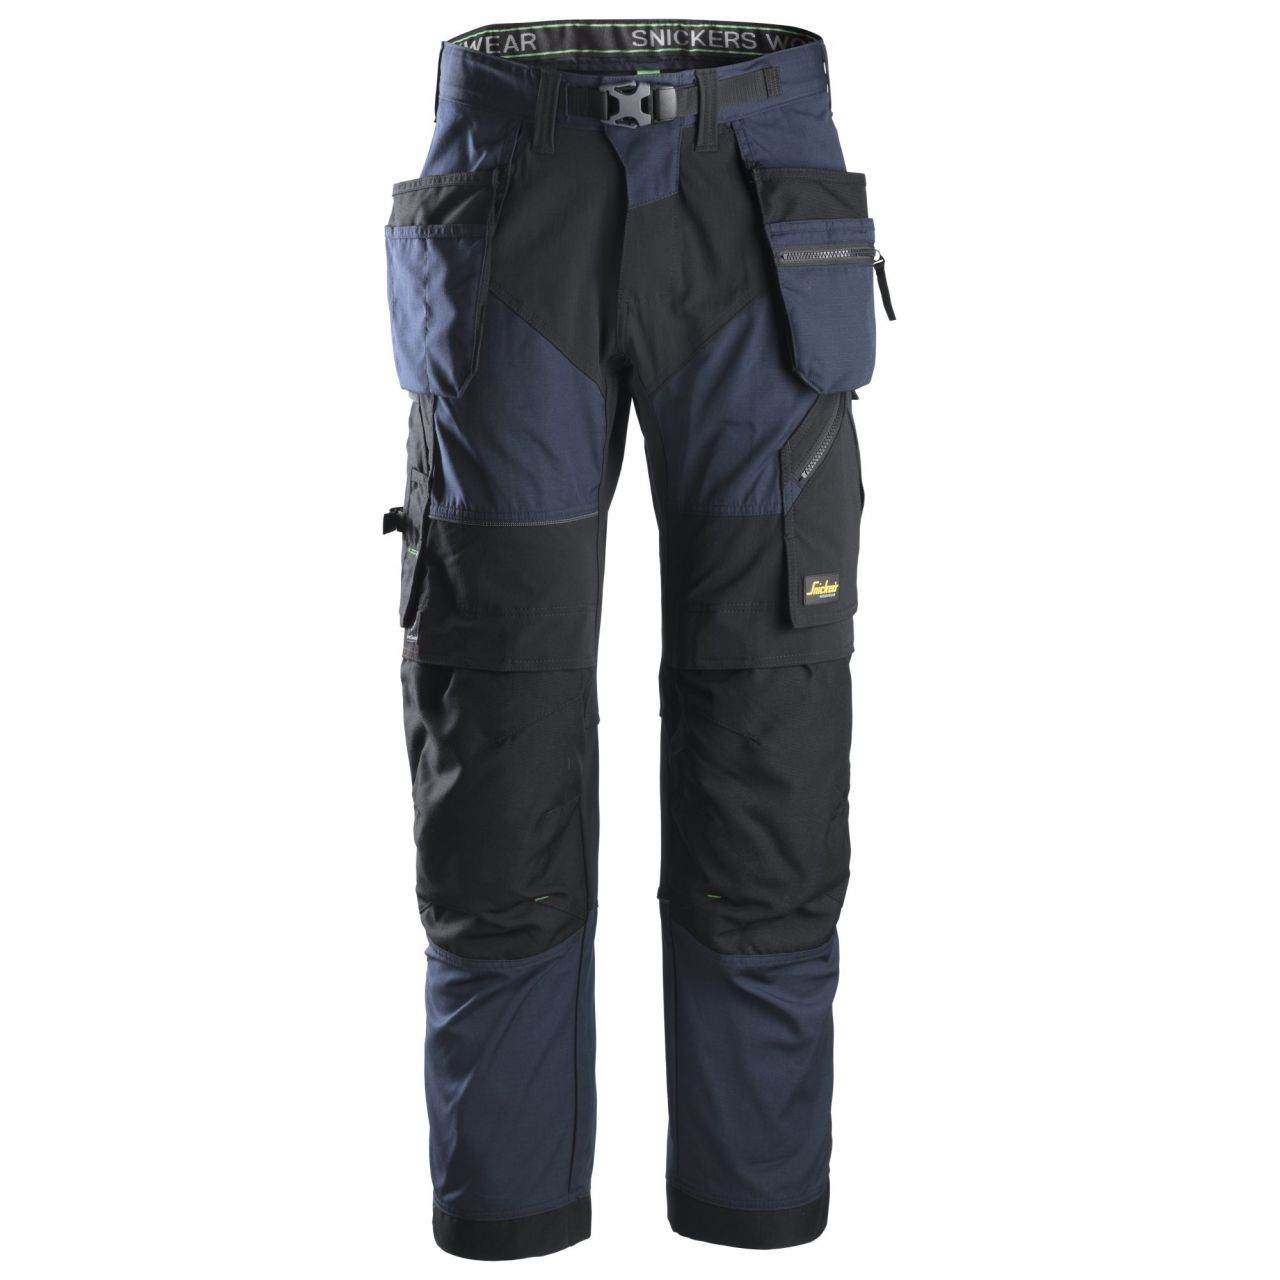 6902 Pantalón largo FlexiWork+ con bolsillos flotantes azul marino-negro talla 62